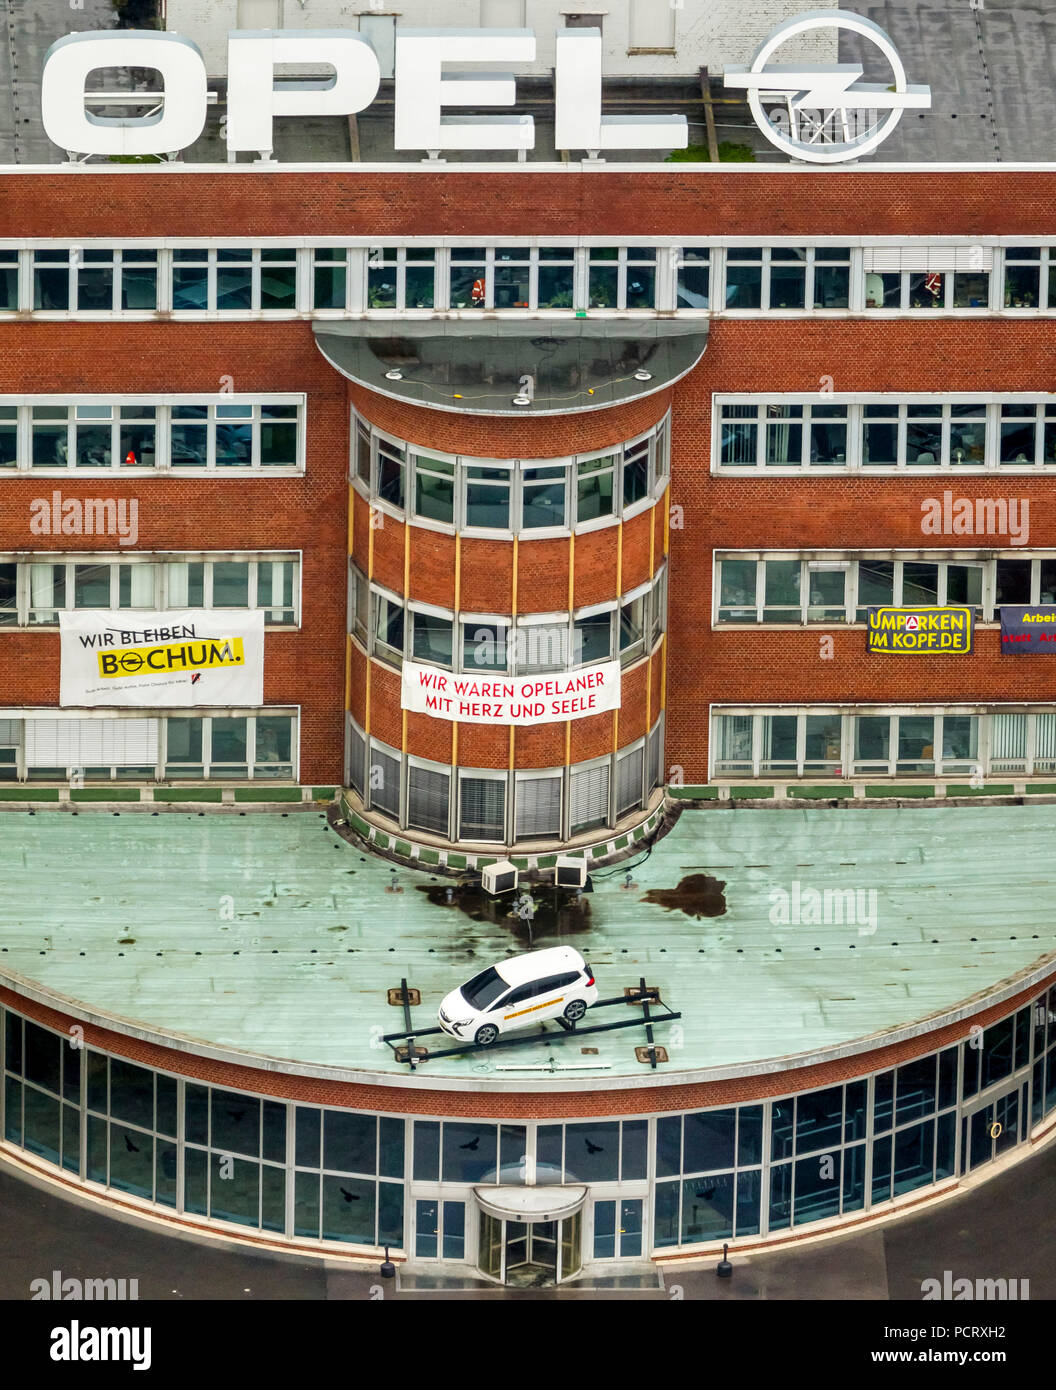 OPEL Verwaltungsgebäude wird besprochen, ein Monument zu werden, Banner mit der Aufschrift "Wir OPELaner waren mit Herz und Seele", drohende Schließung des Opel-Werks in Bochum, Bochum, Ruhrgebiet, Nordrhein-Westfalen, Deutschland Stockfoto